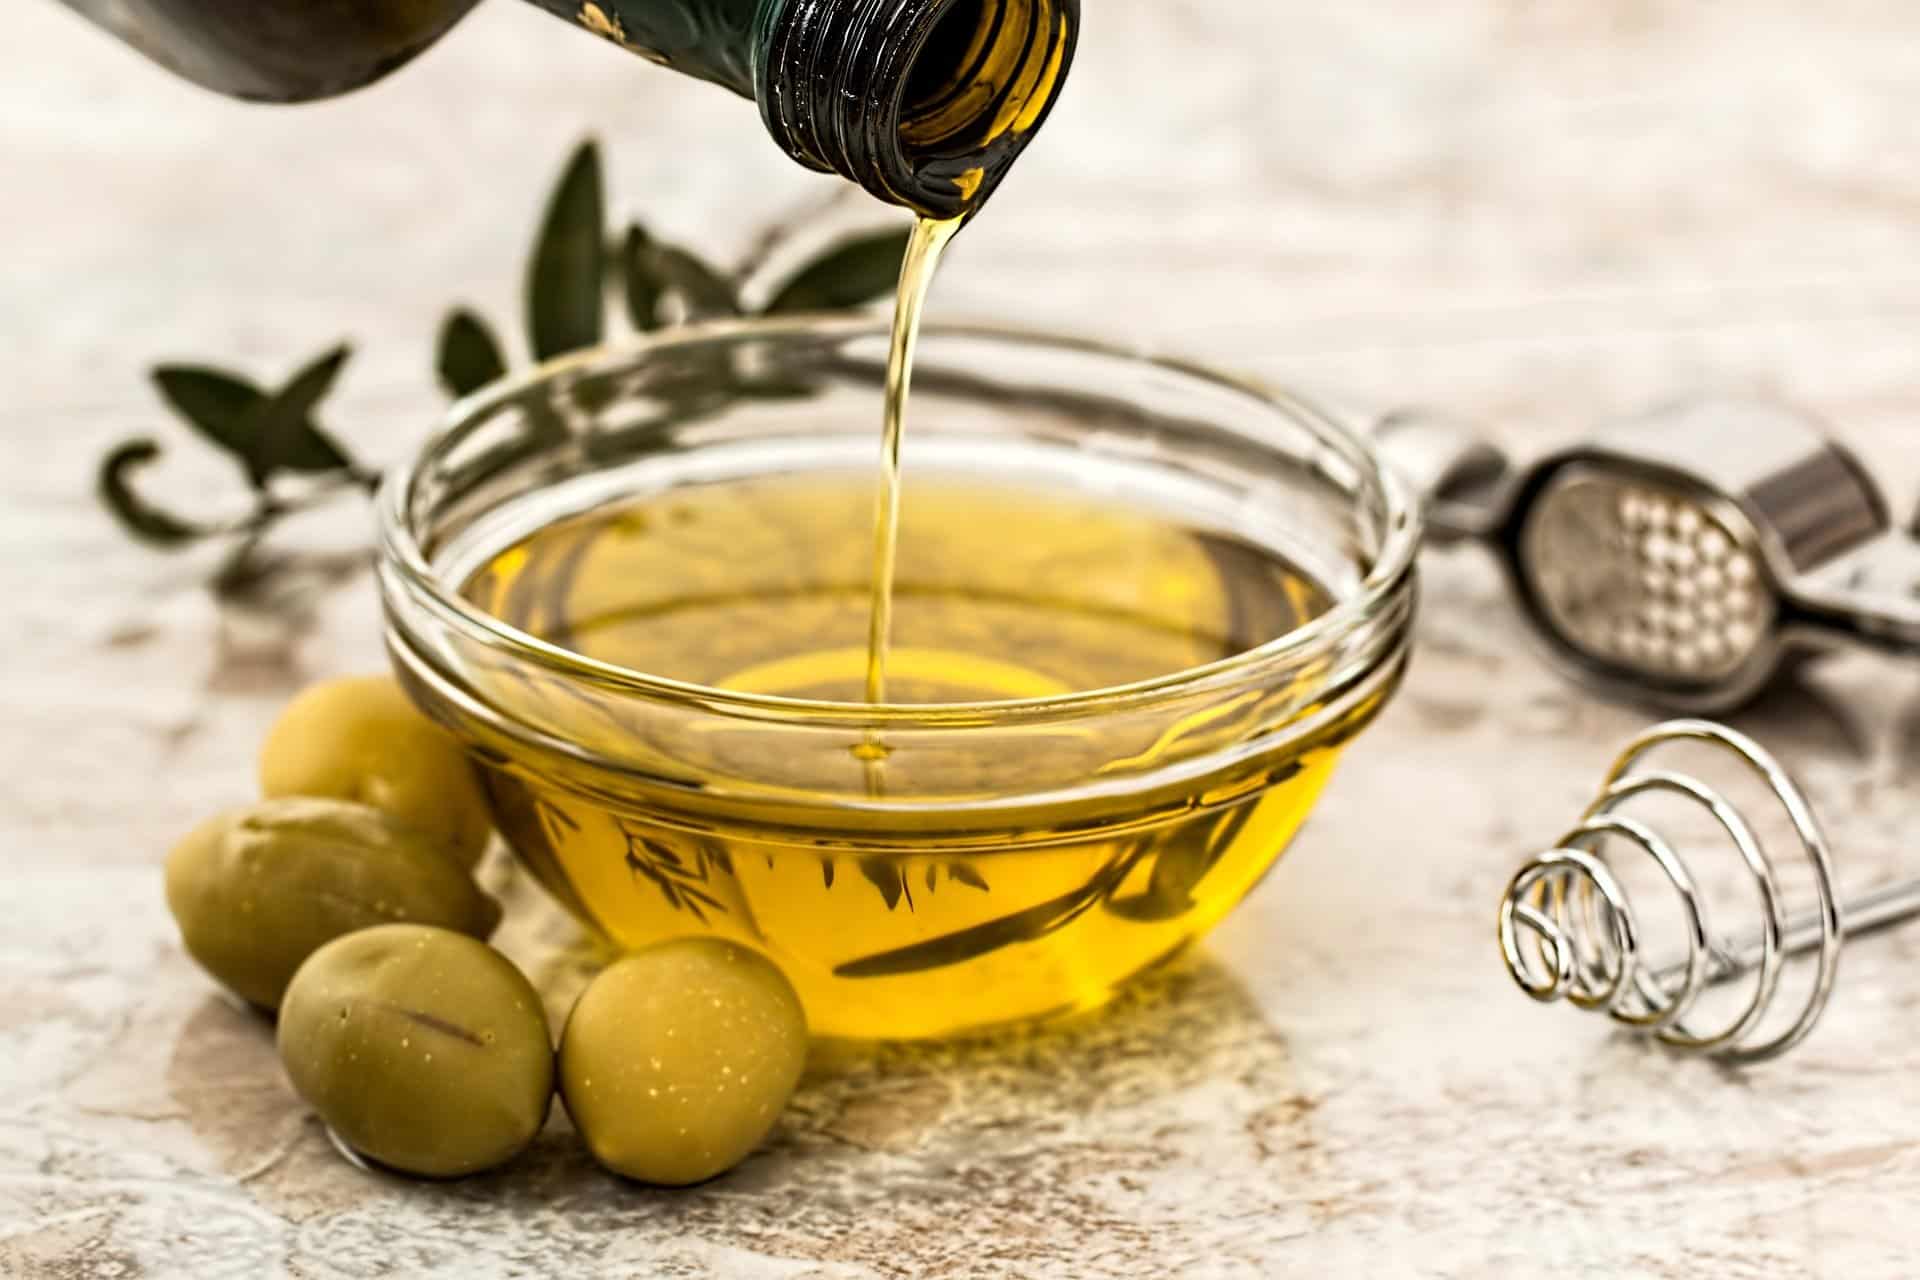 Fotografia do azeite de oliva